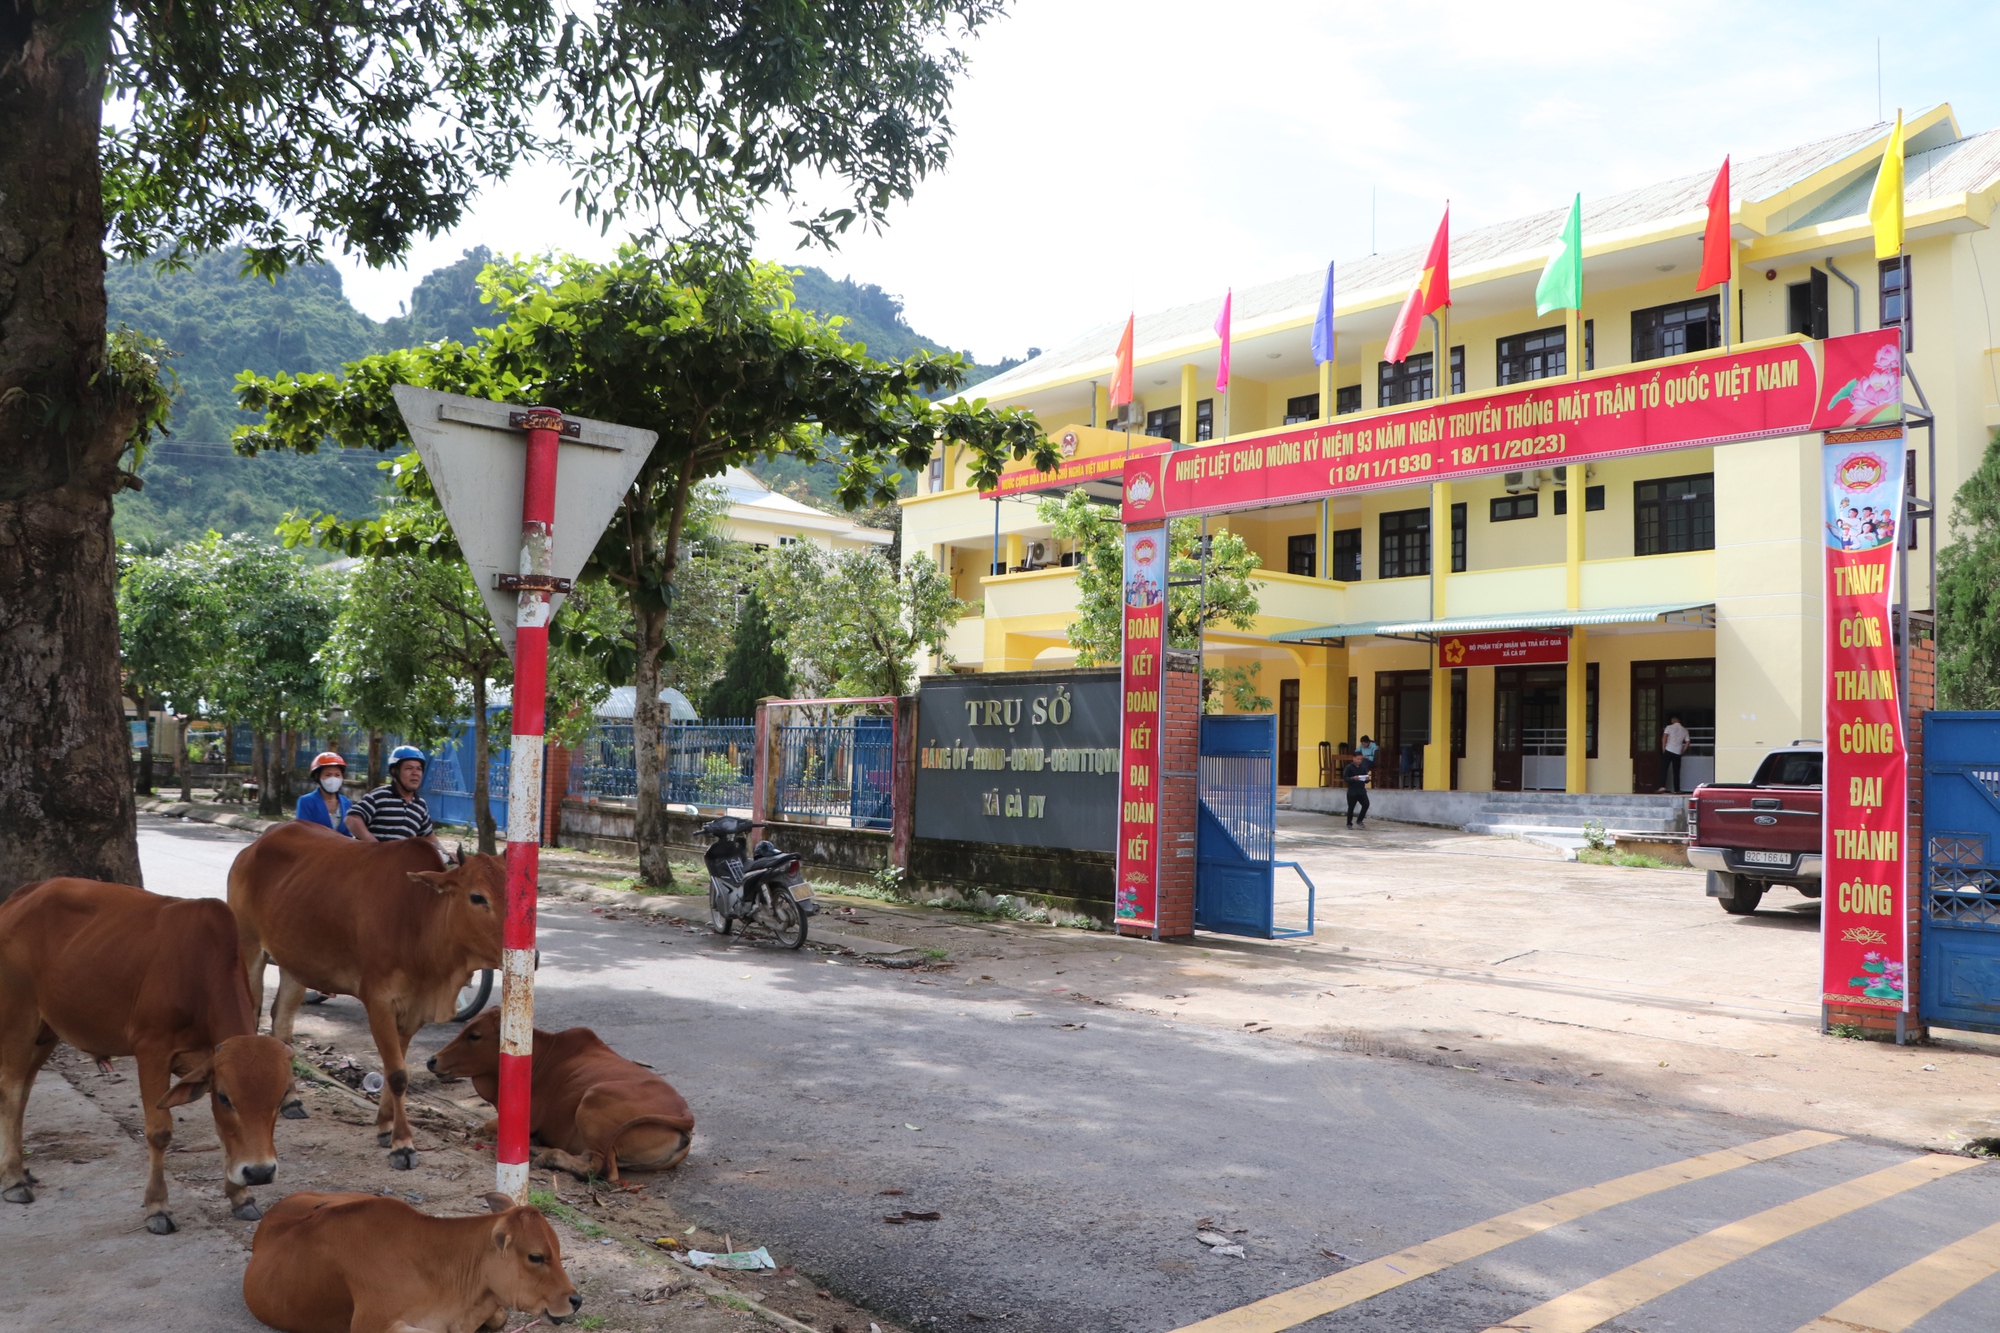 Hàng loạt trụ sở bỏ hoang lãng phí ở huyện miền núi nghèo Quảng Nam - Ảnh 15.